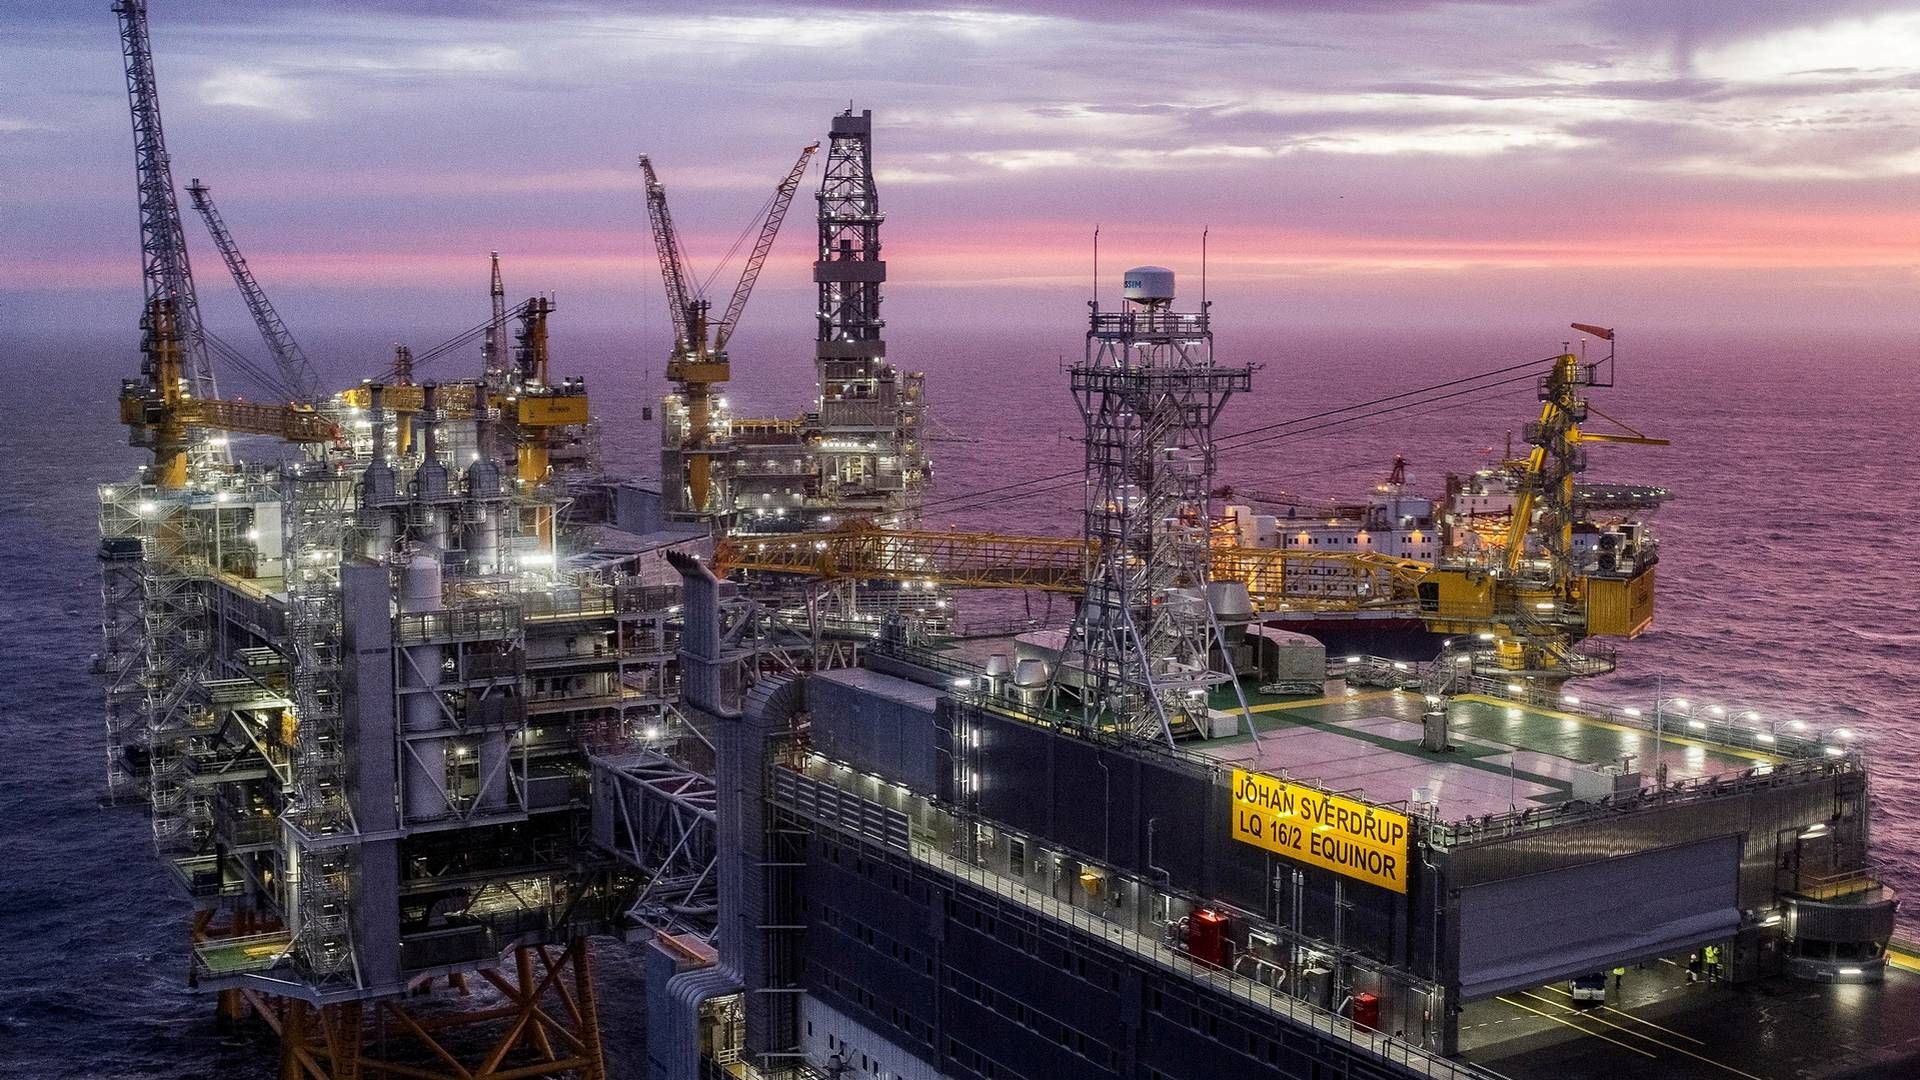 JOHAN SVERDRUP: Oljefeltet har hatt inntekter på nesten tre ganger den samlede investeringskostnaden på rundt 140 milliarder kroner. | Foto: Carina Johansen / NTB